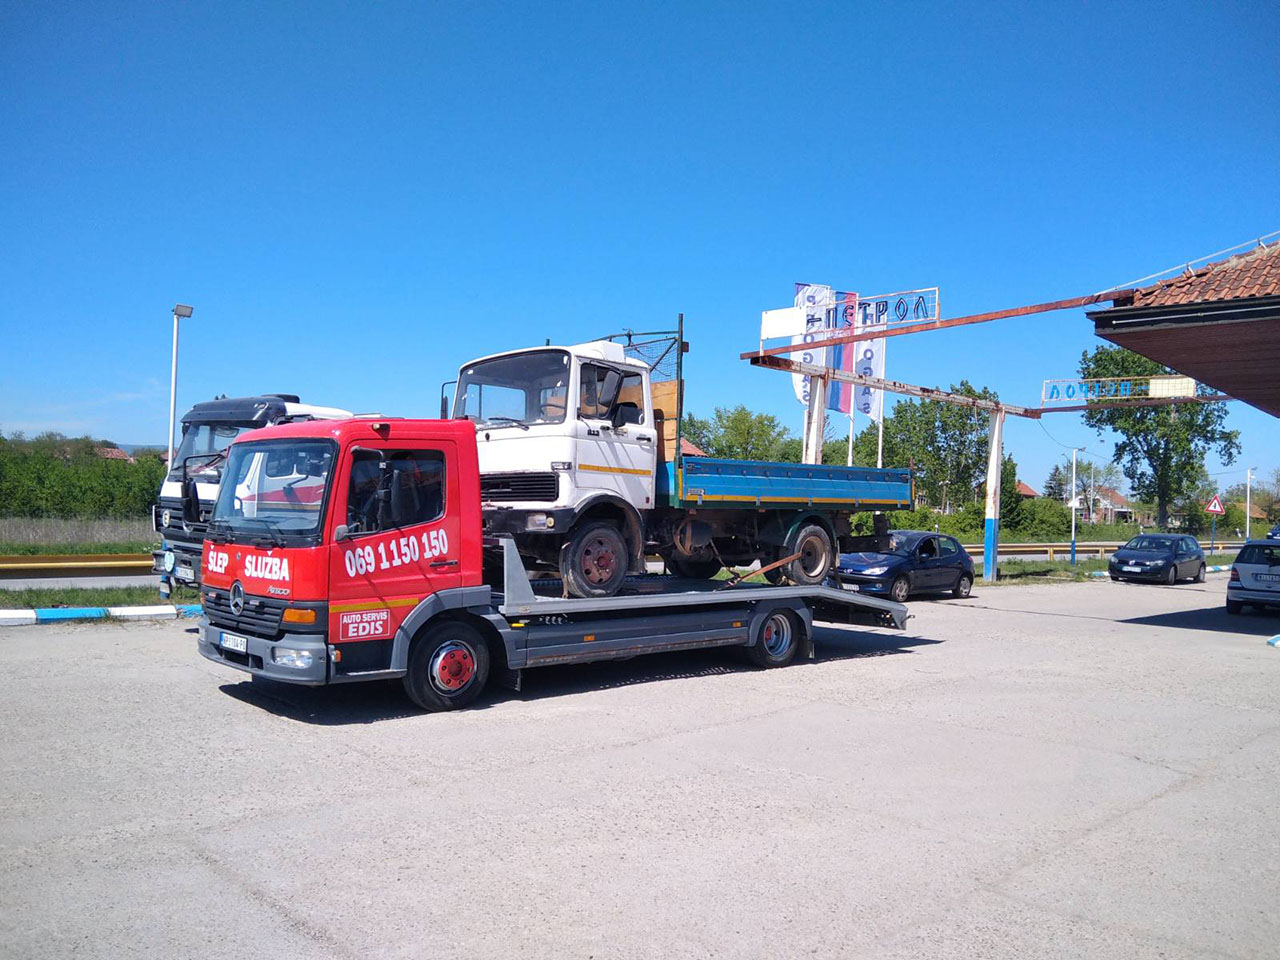 Photo 2 - CAR ELECTRINICS END TOWING SERVICE EDIS - Car electricians, Novi Pazar